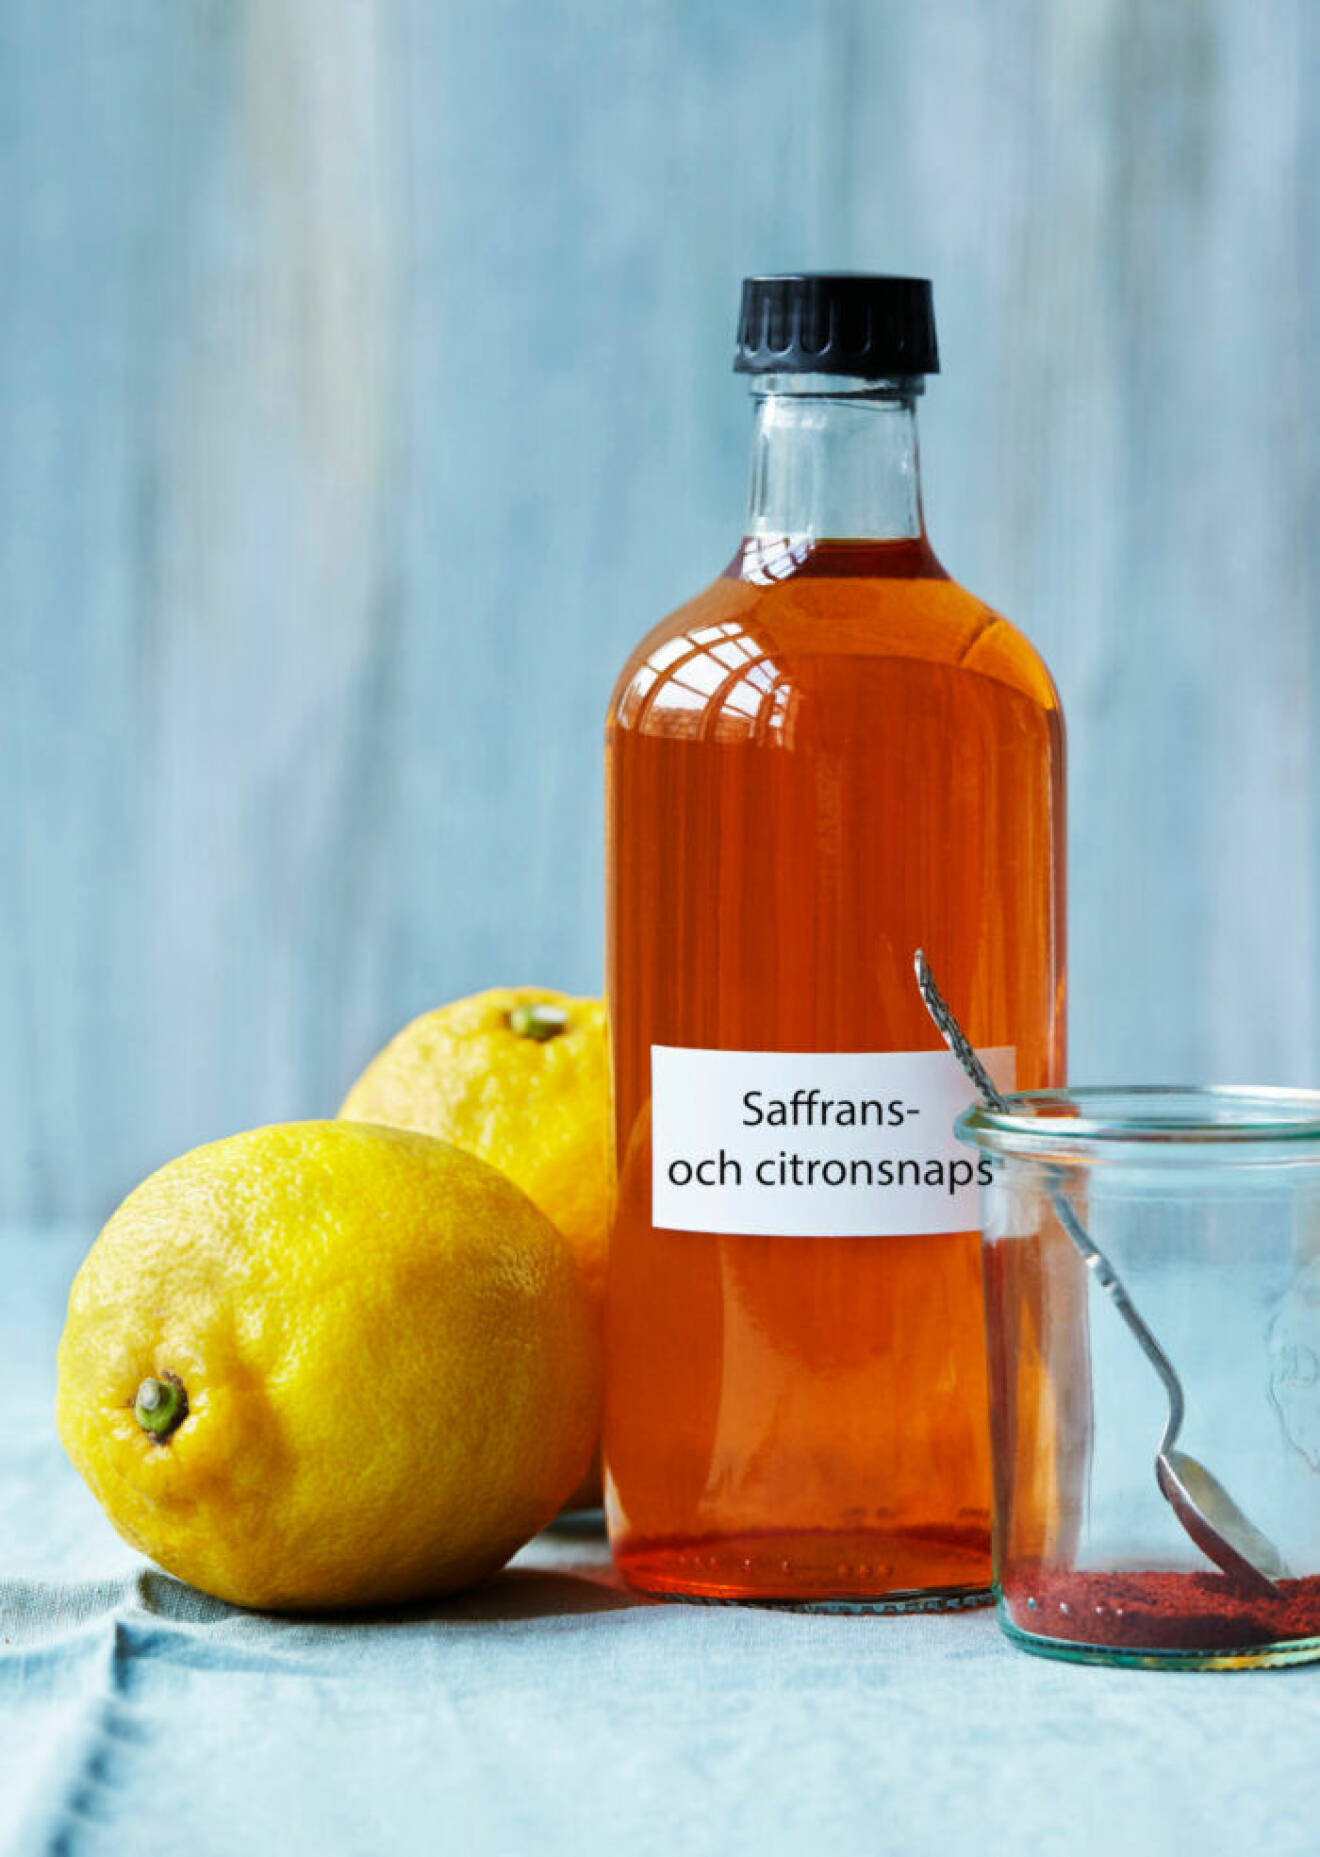 Saffrans- och citronsnaps